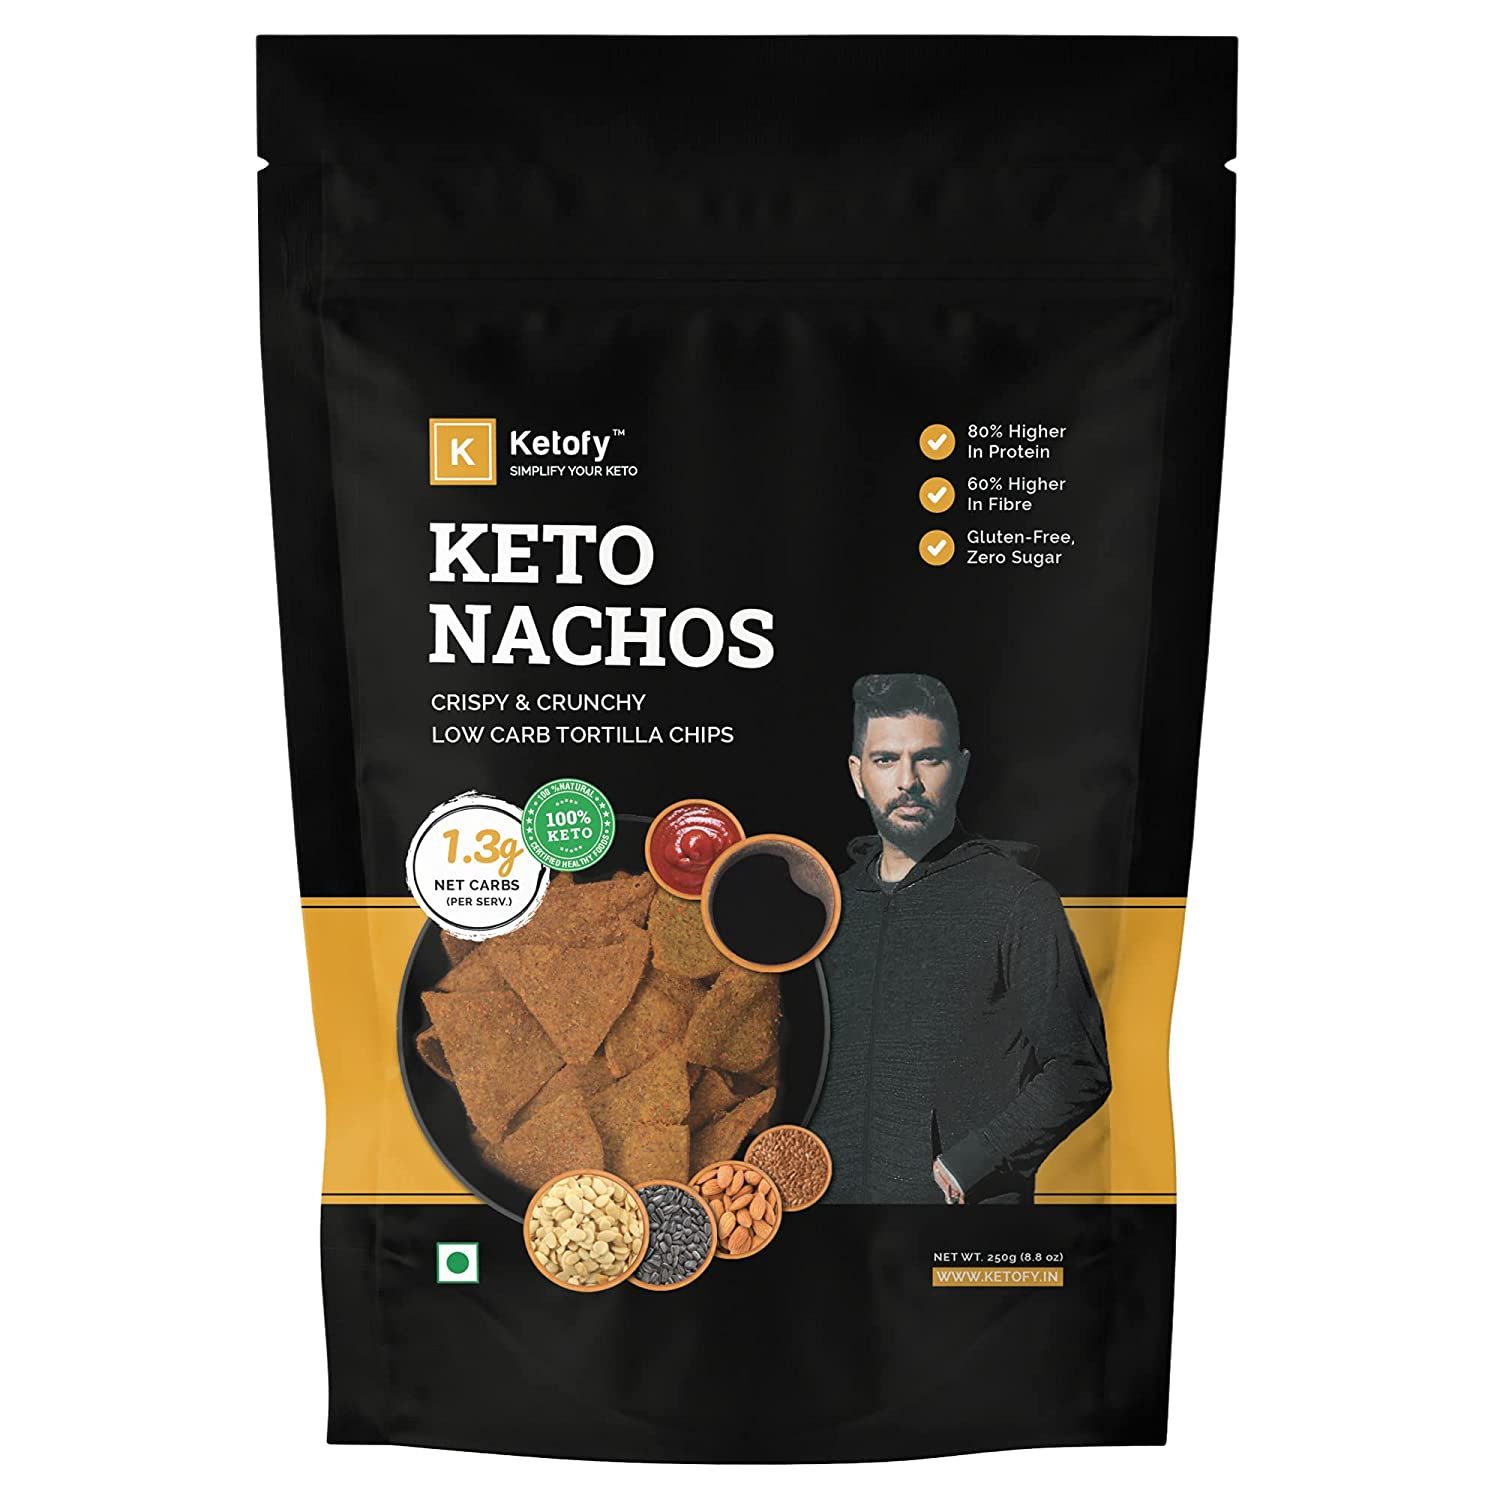 Ketofy Keto Nachos Image